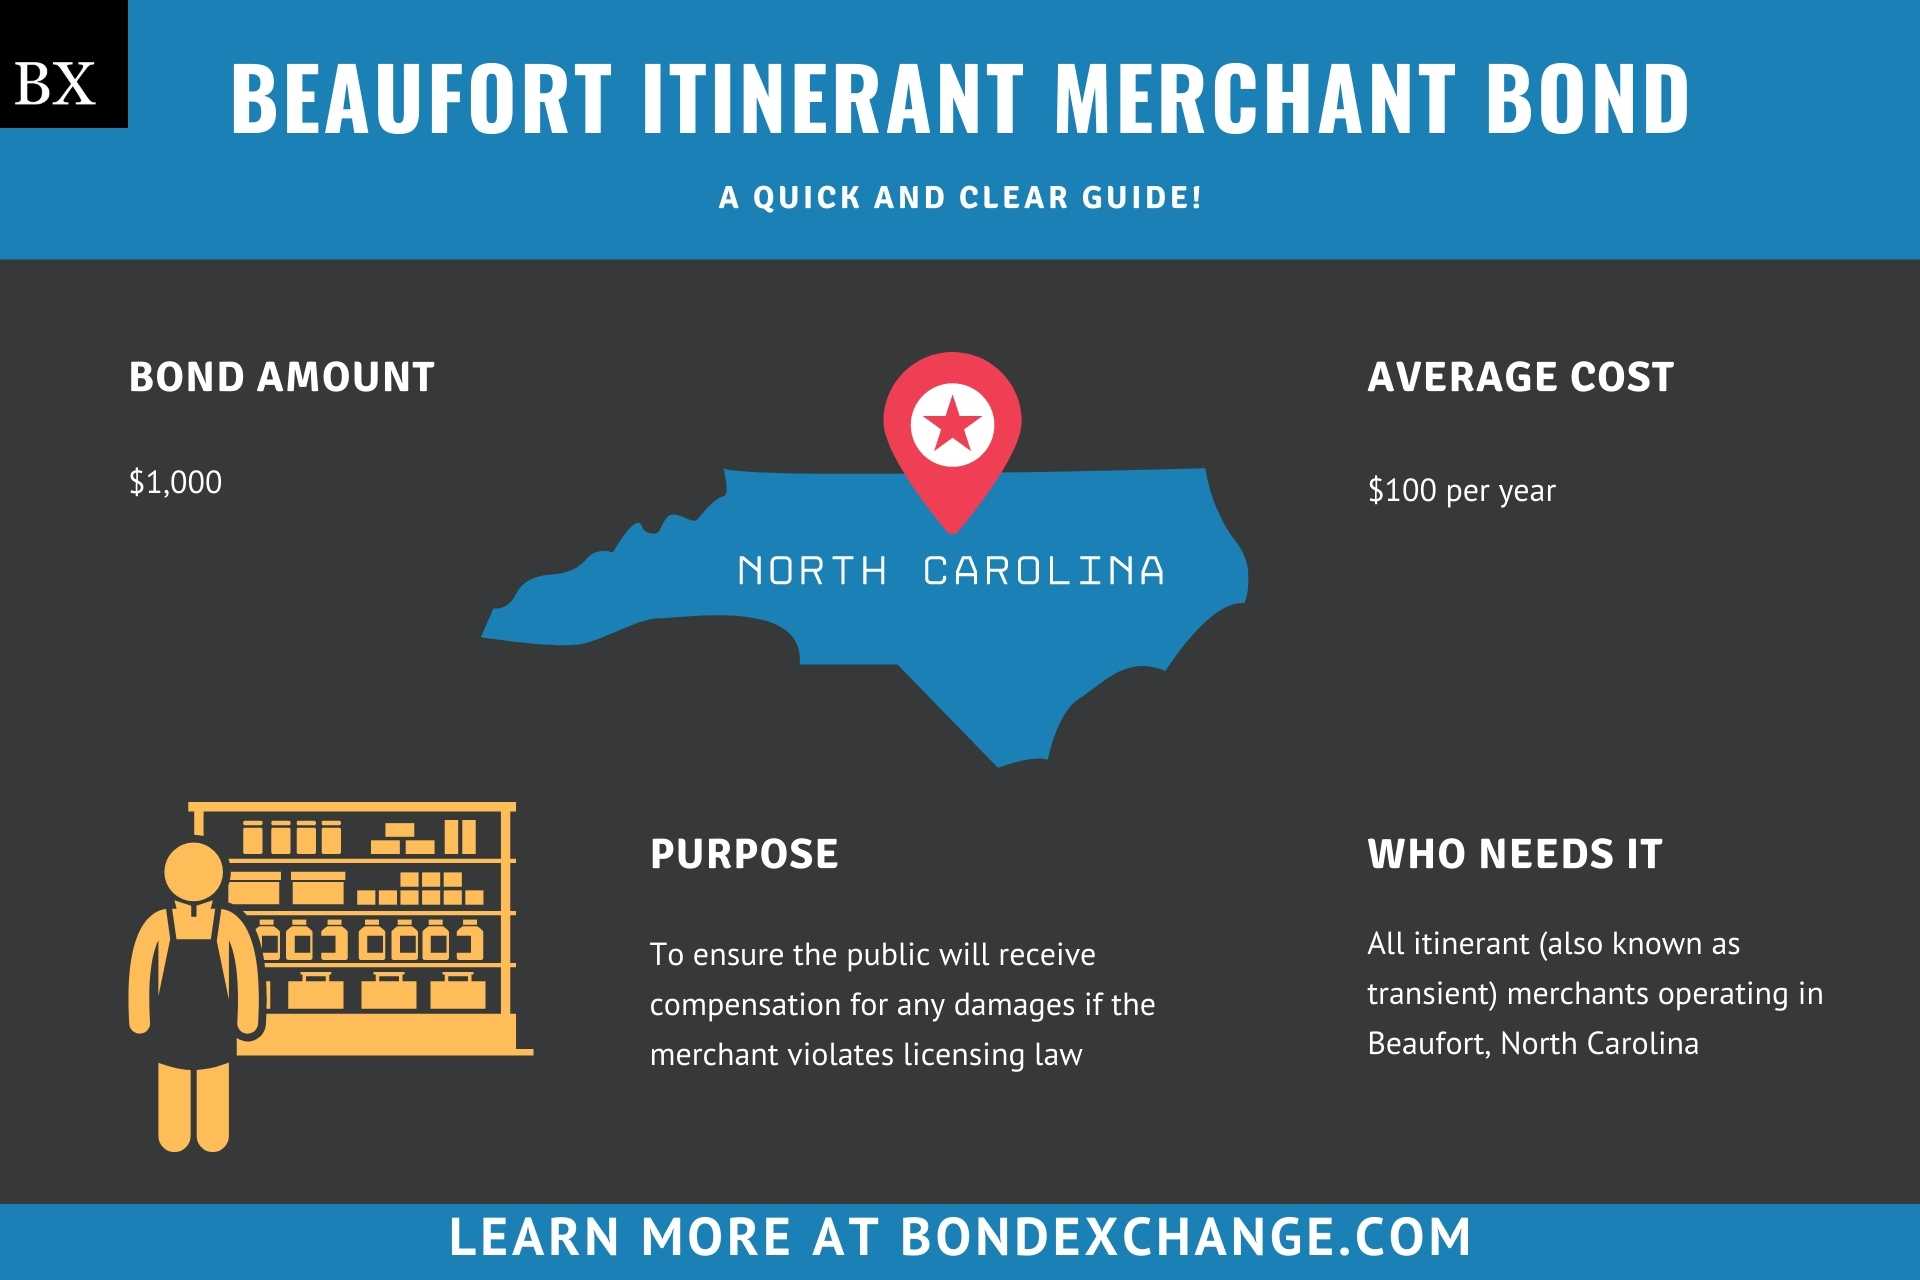 Beaufort Itinerant Merchant Bond